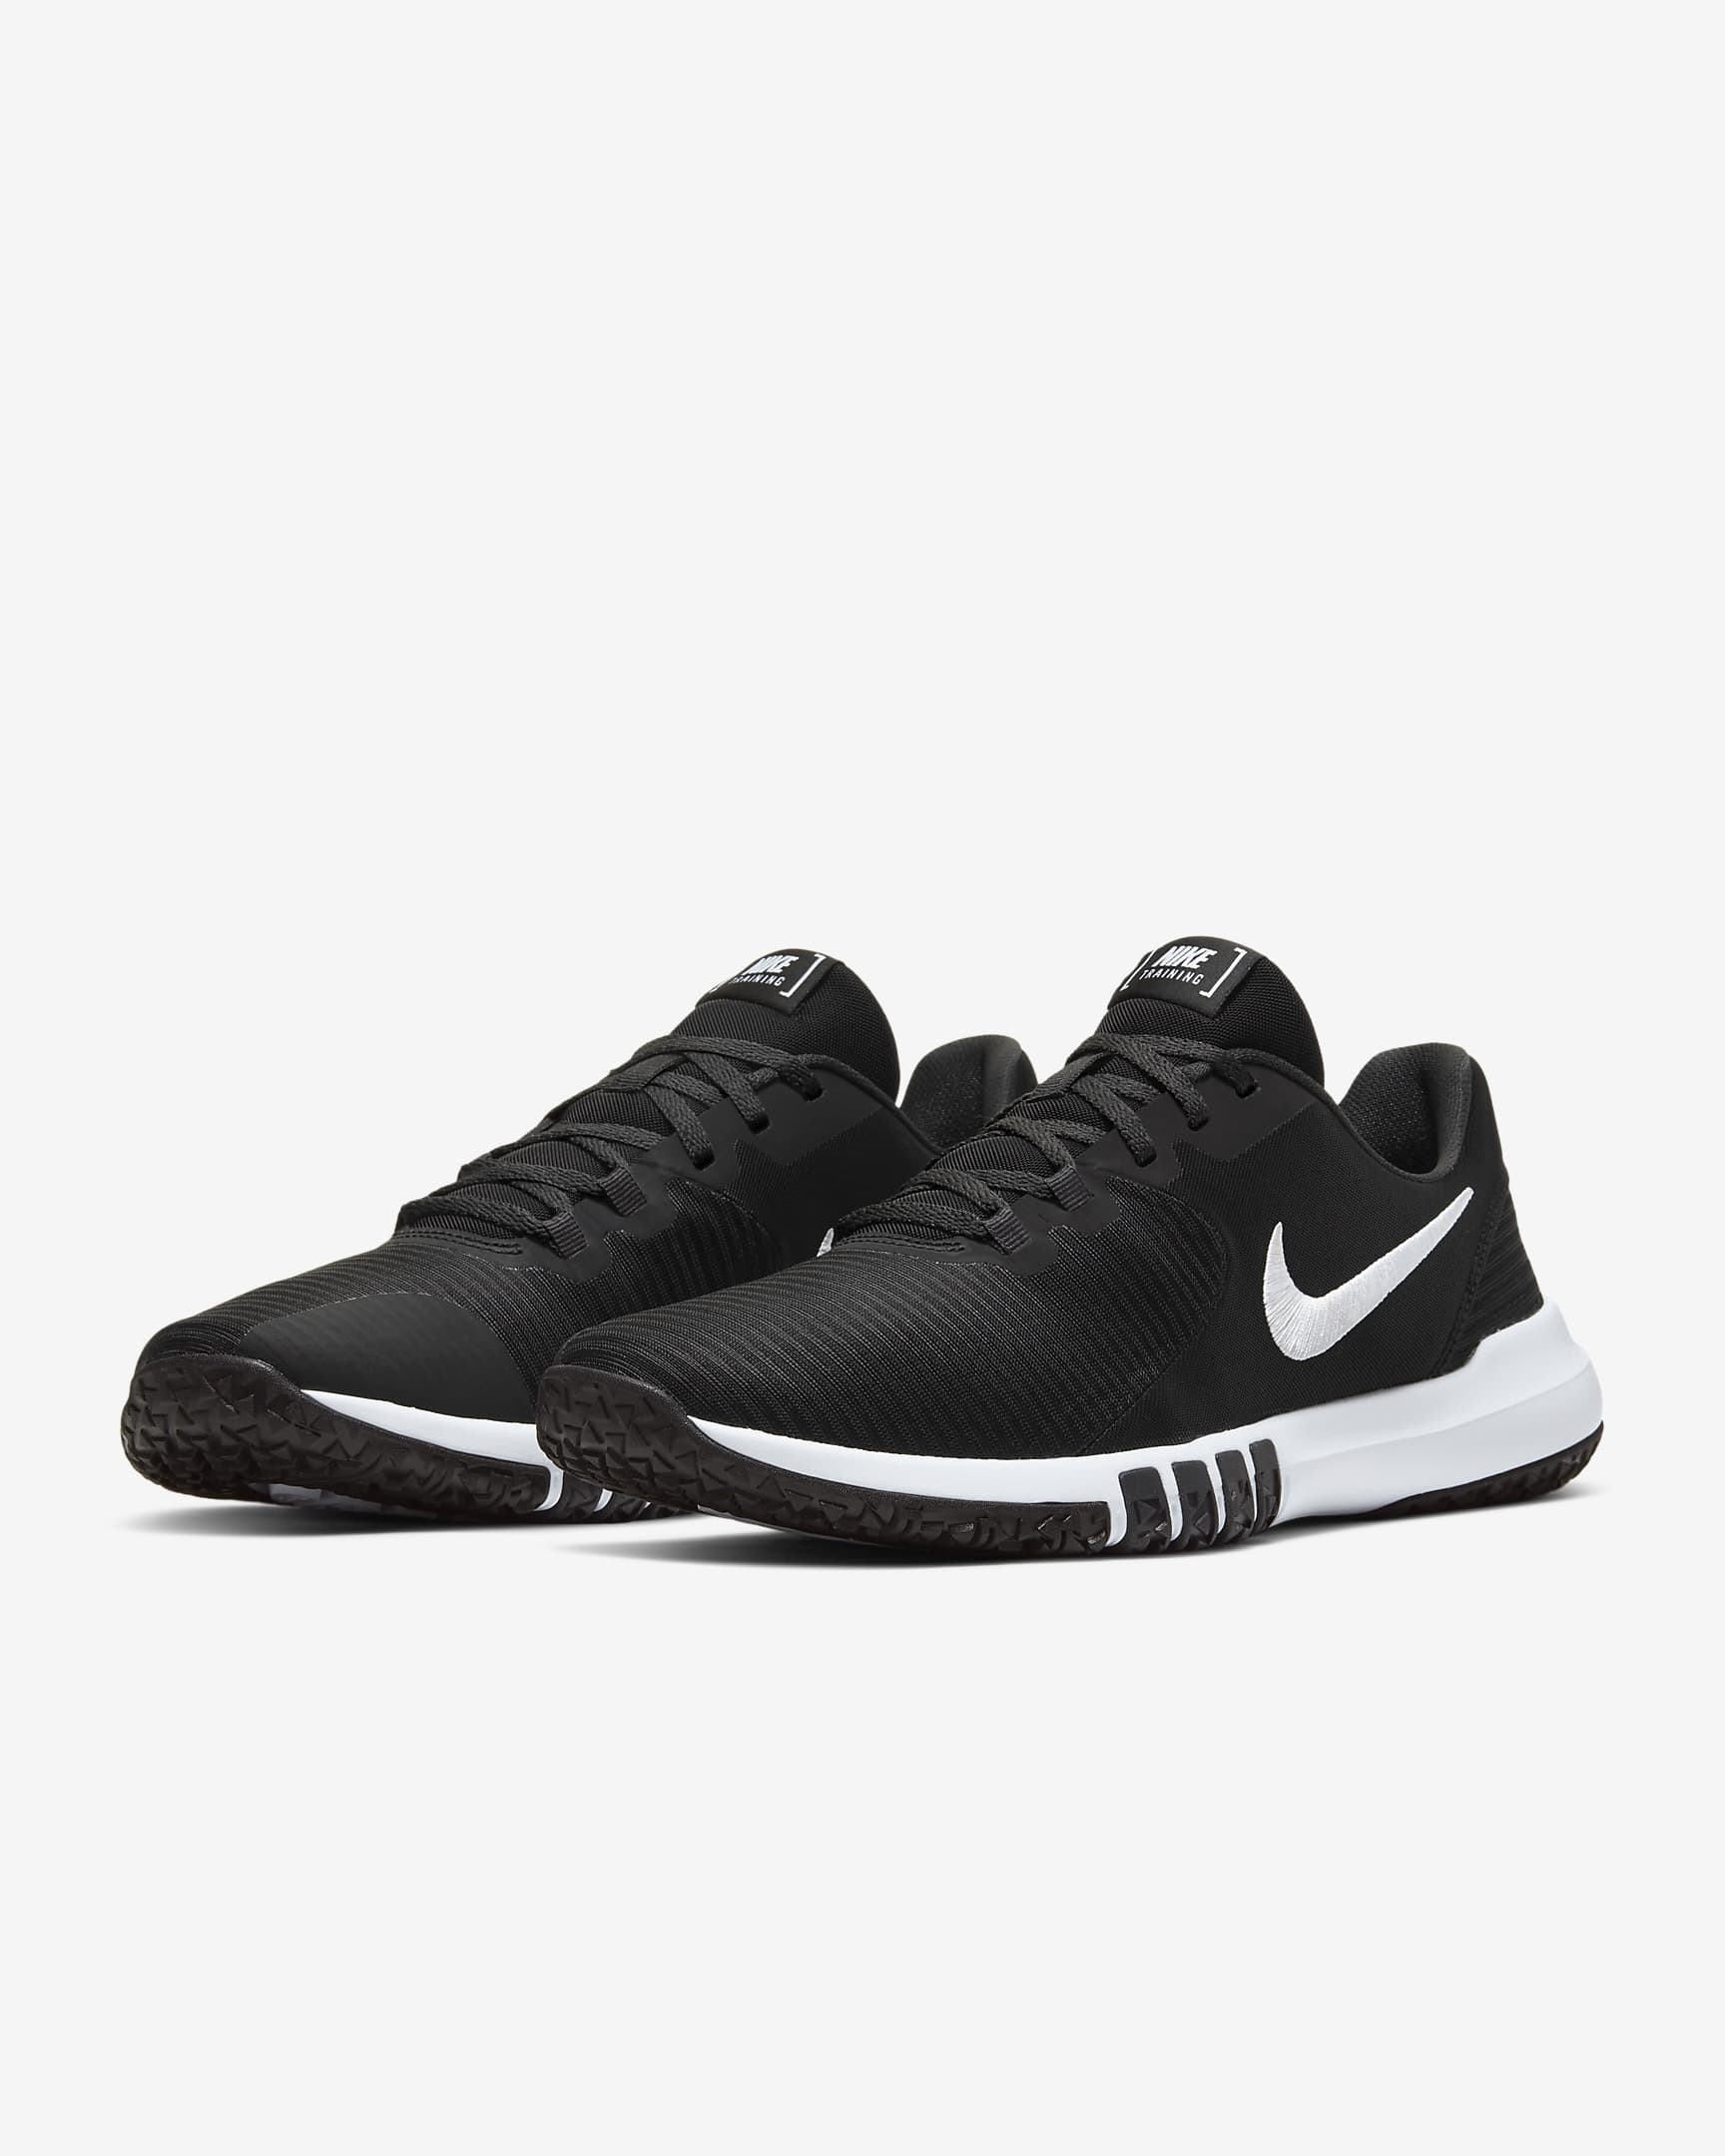 Nike Flex Control 4 Men's Workout Shoes - Black/Dark Smoke Grey/Smoke Grey/White